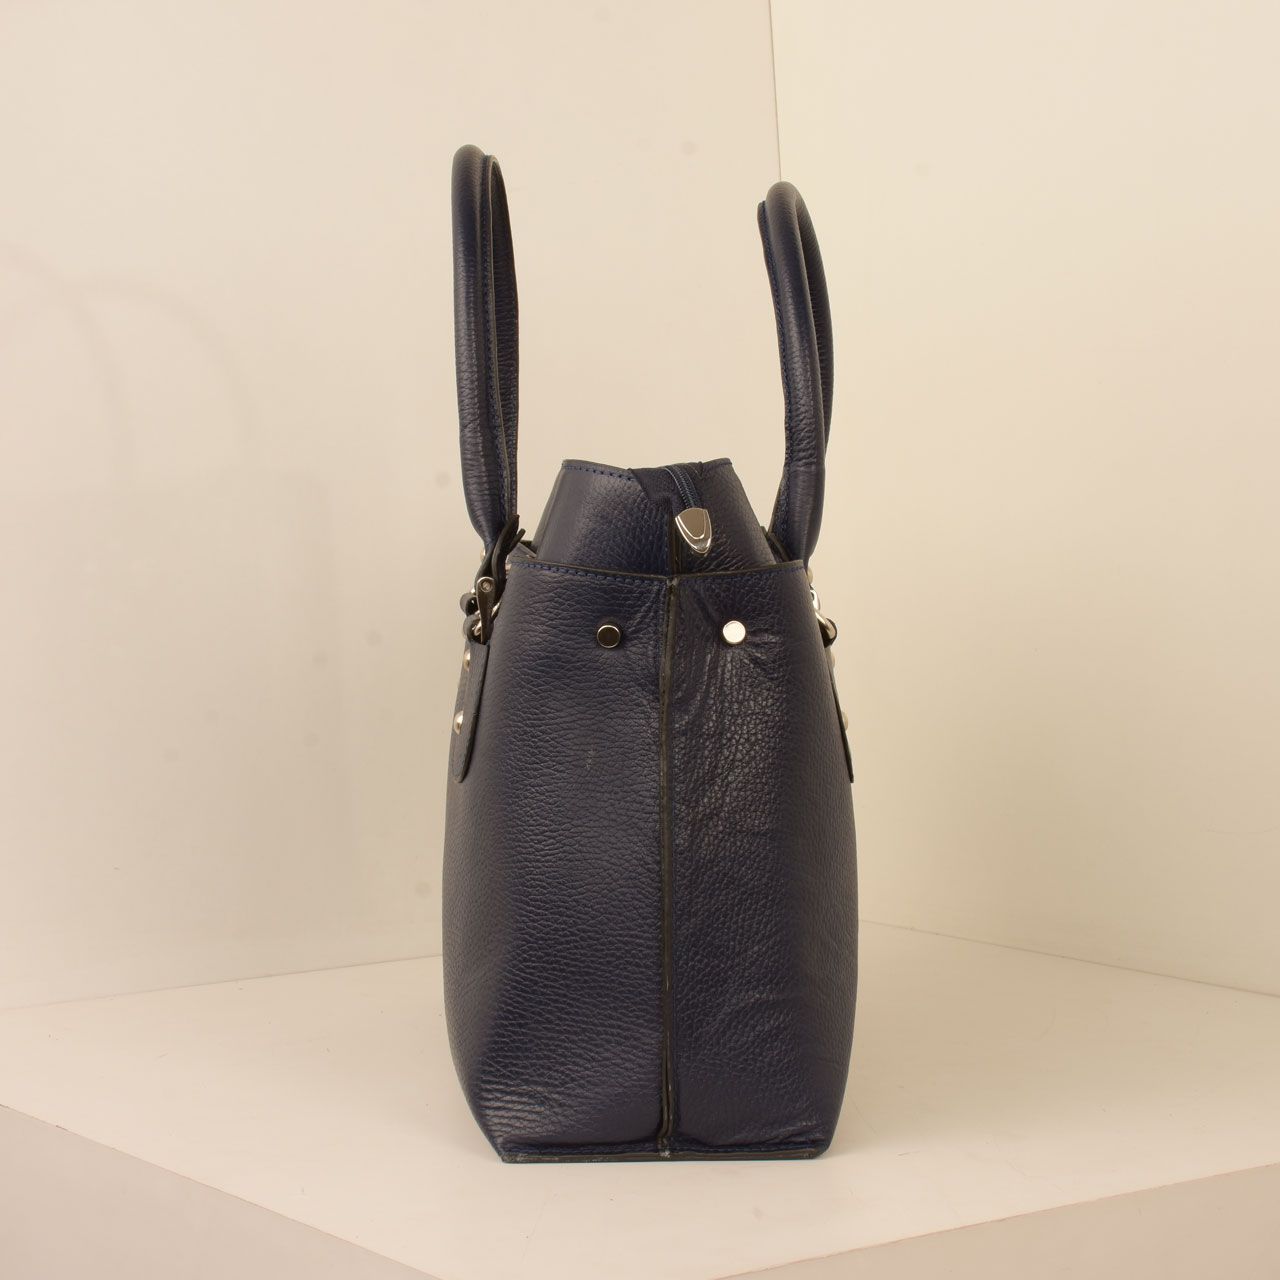 کیف دستی زنانه پارینه چرم مدل V200-2 -  - 25